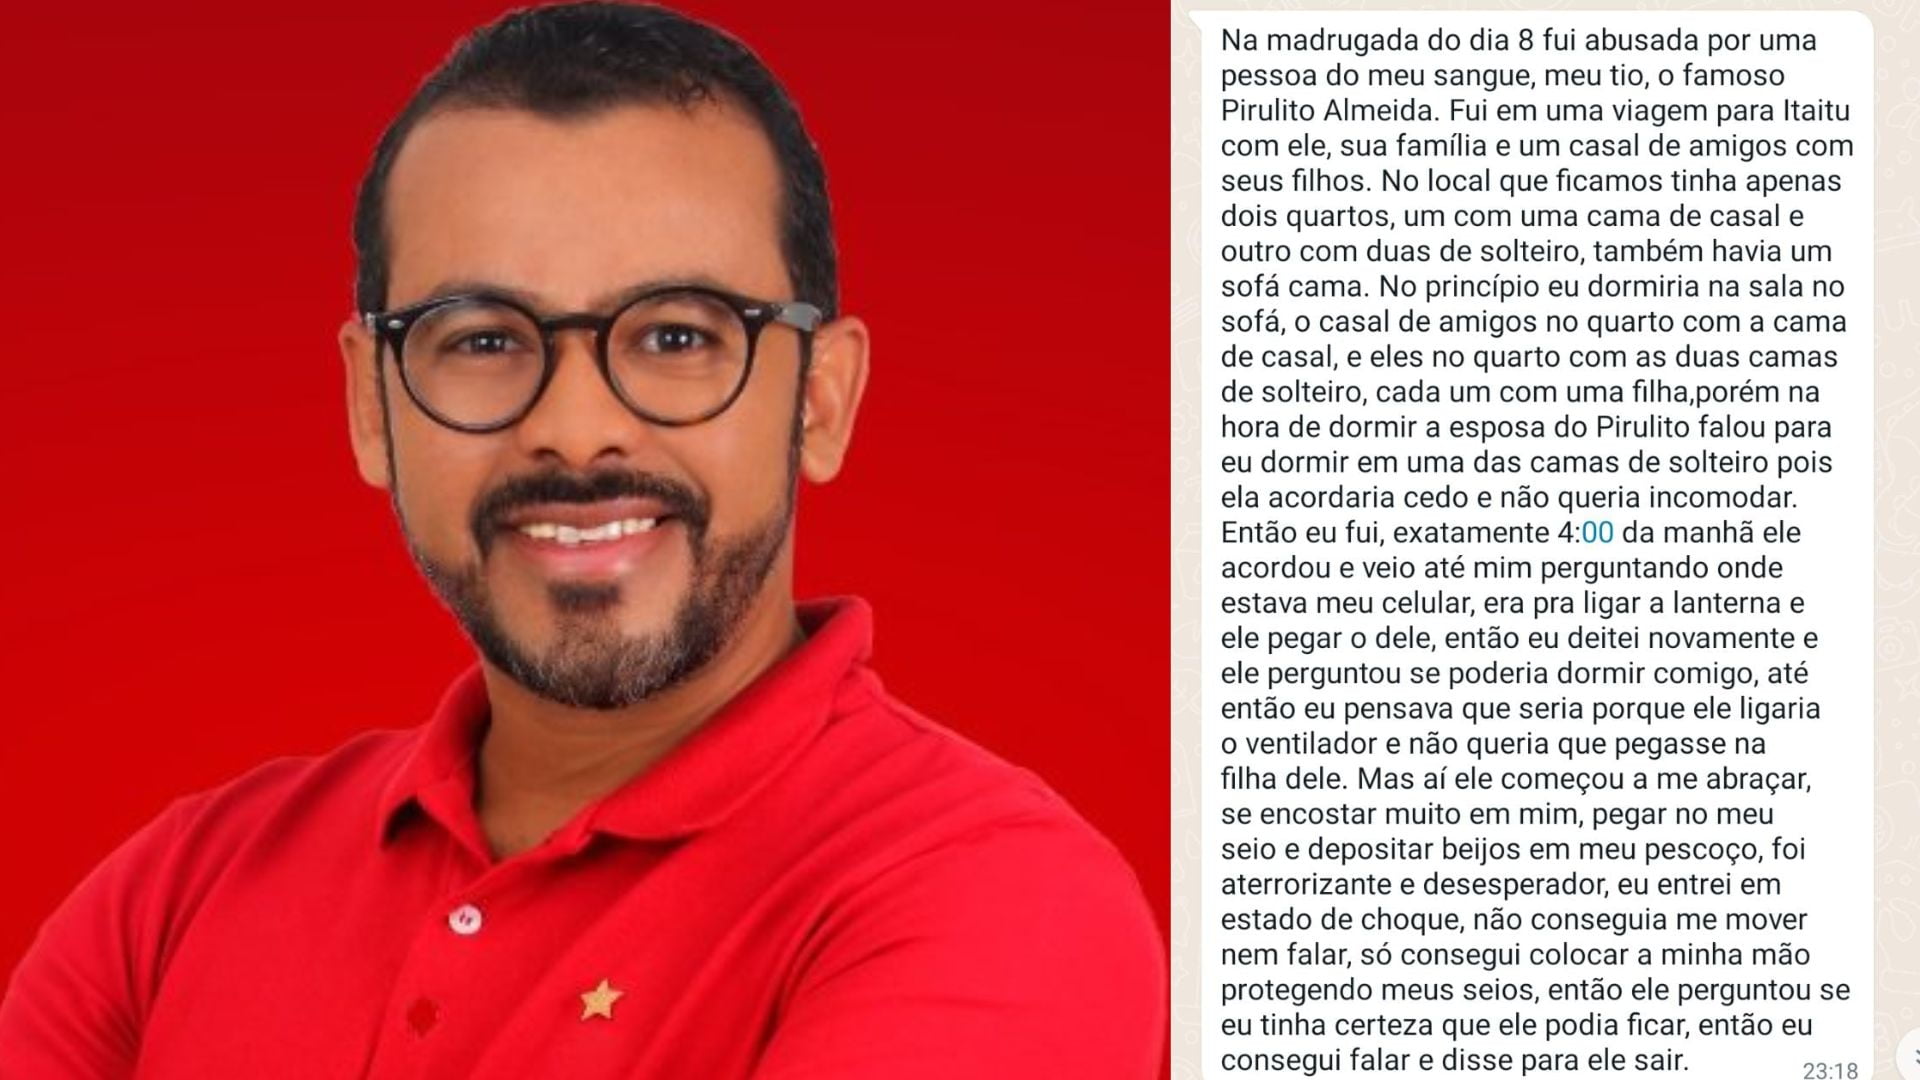 Suplente De Vereador É Suspeito De Cometer Abuso Sexual Contra Sobrinha Na Bahia